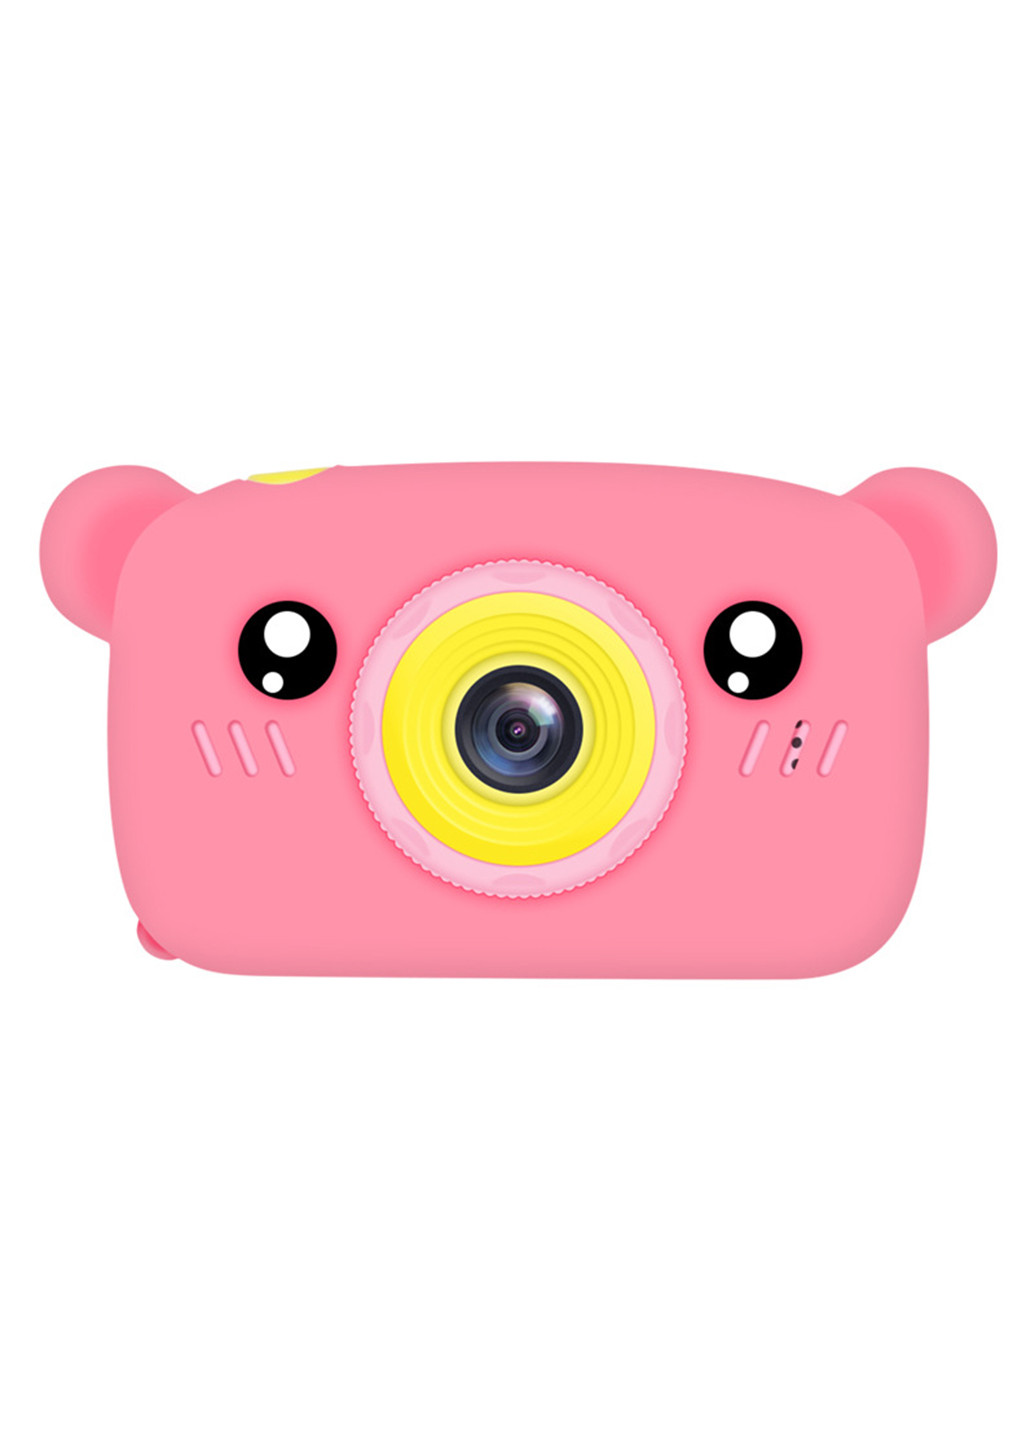 Цифровий дитячий фотоапарат KVR-005 Bear рожевий () XoKo kvr-005-pn (171738967)